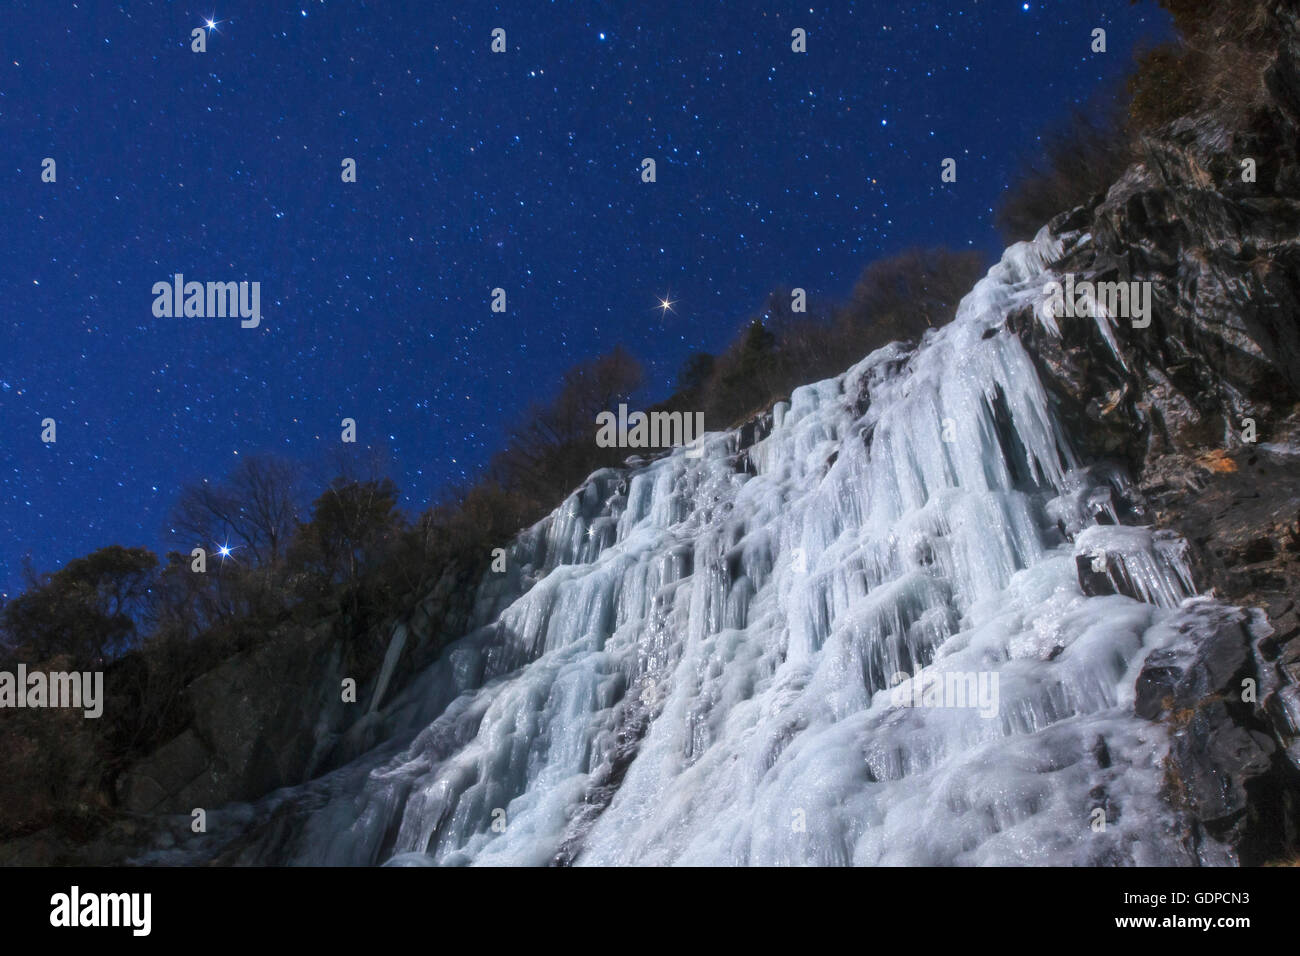 Stelle del triangolo invernale brillano al di sopra di un ghiacciaio in una notte di luna nella provincia di Sichuan della Cina. Foto Stock